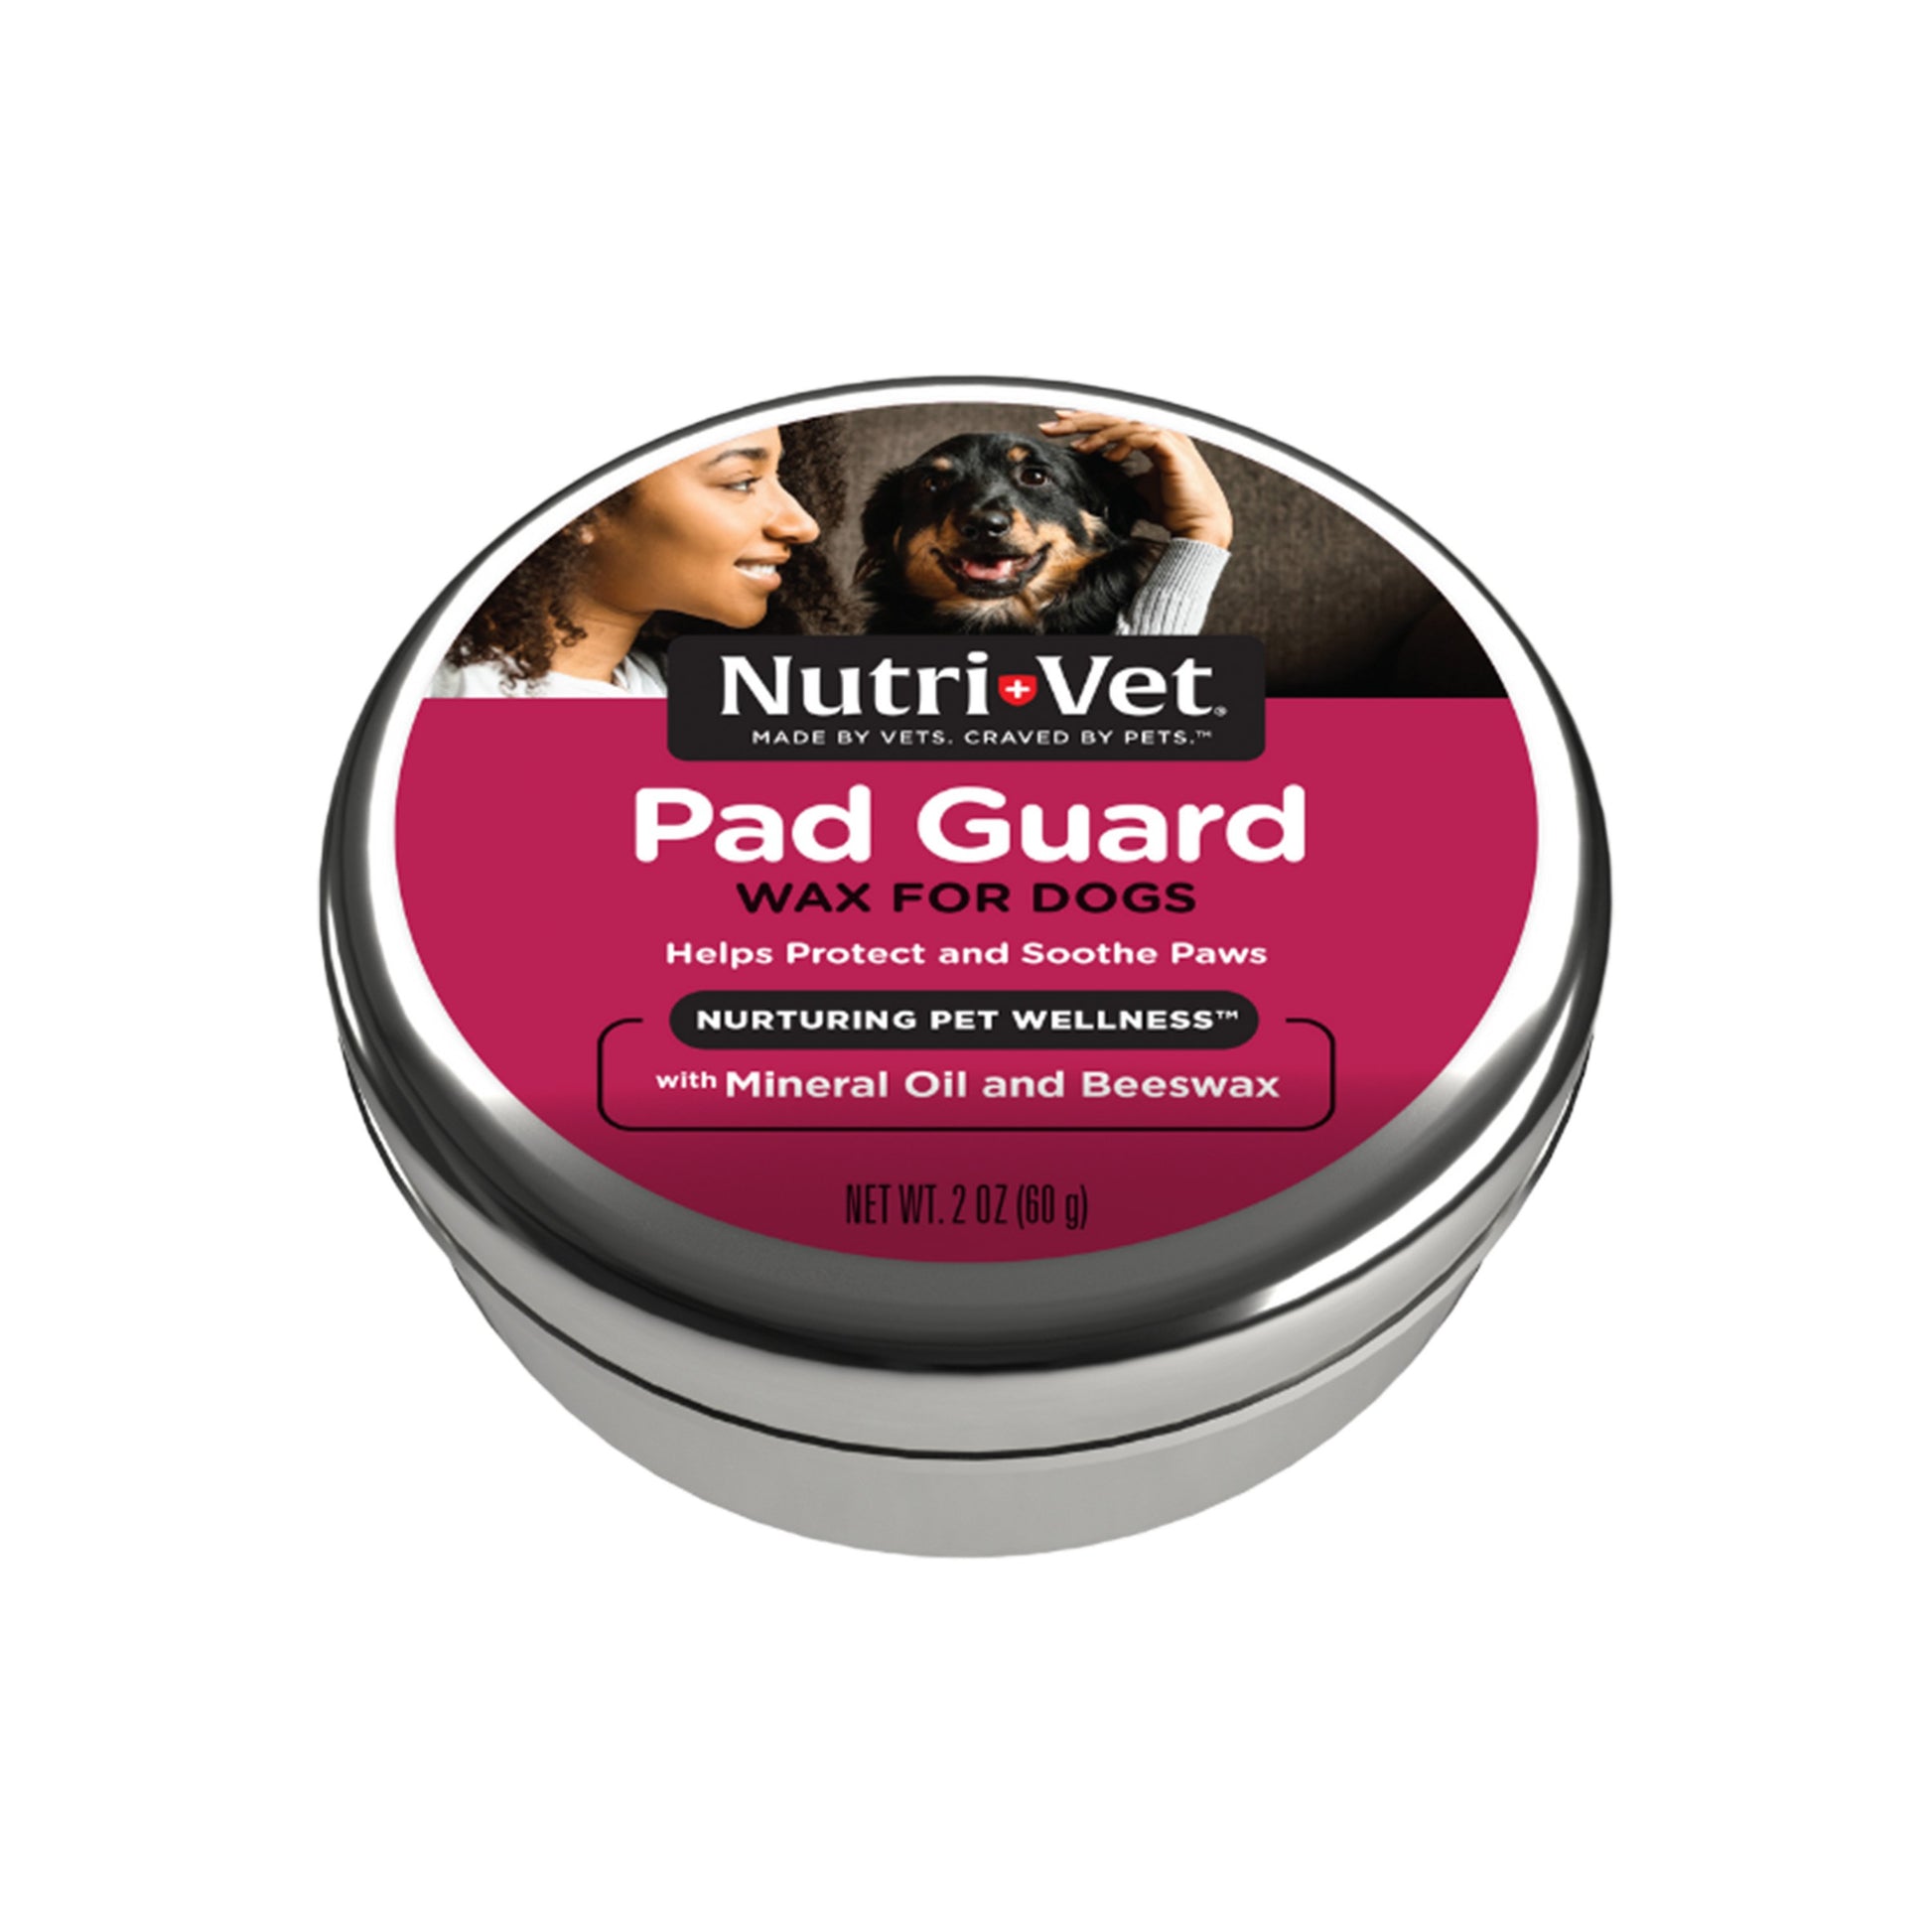 Nutri-Vet Pad Guard Wax for Dogs 2 oz, Nutri-Vet